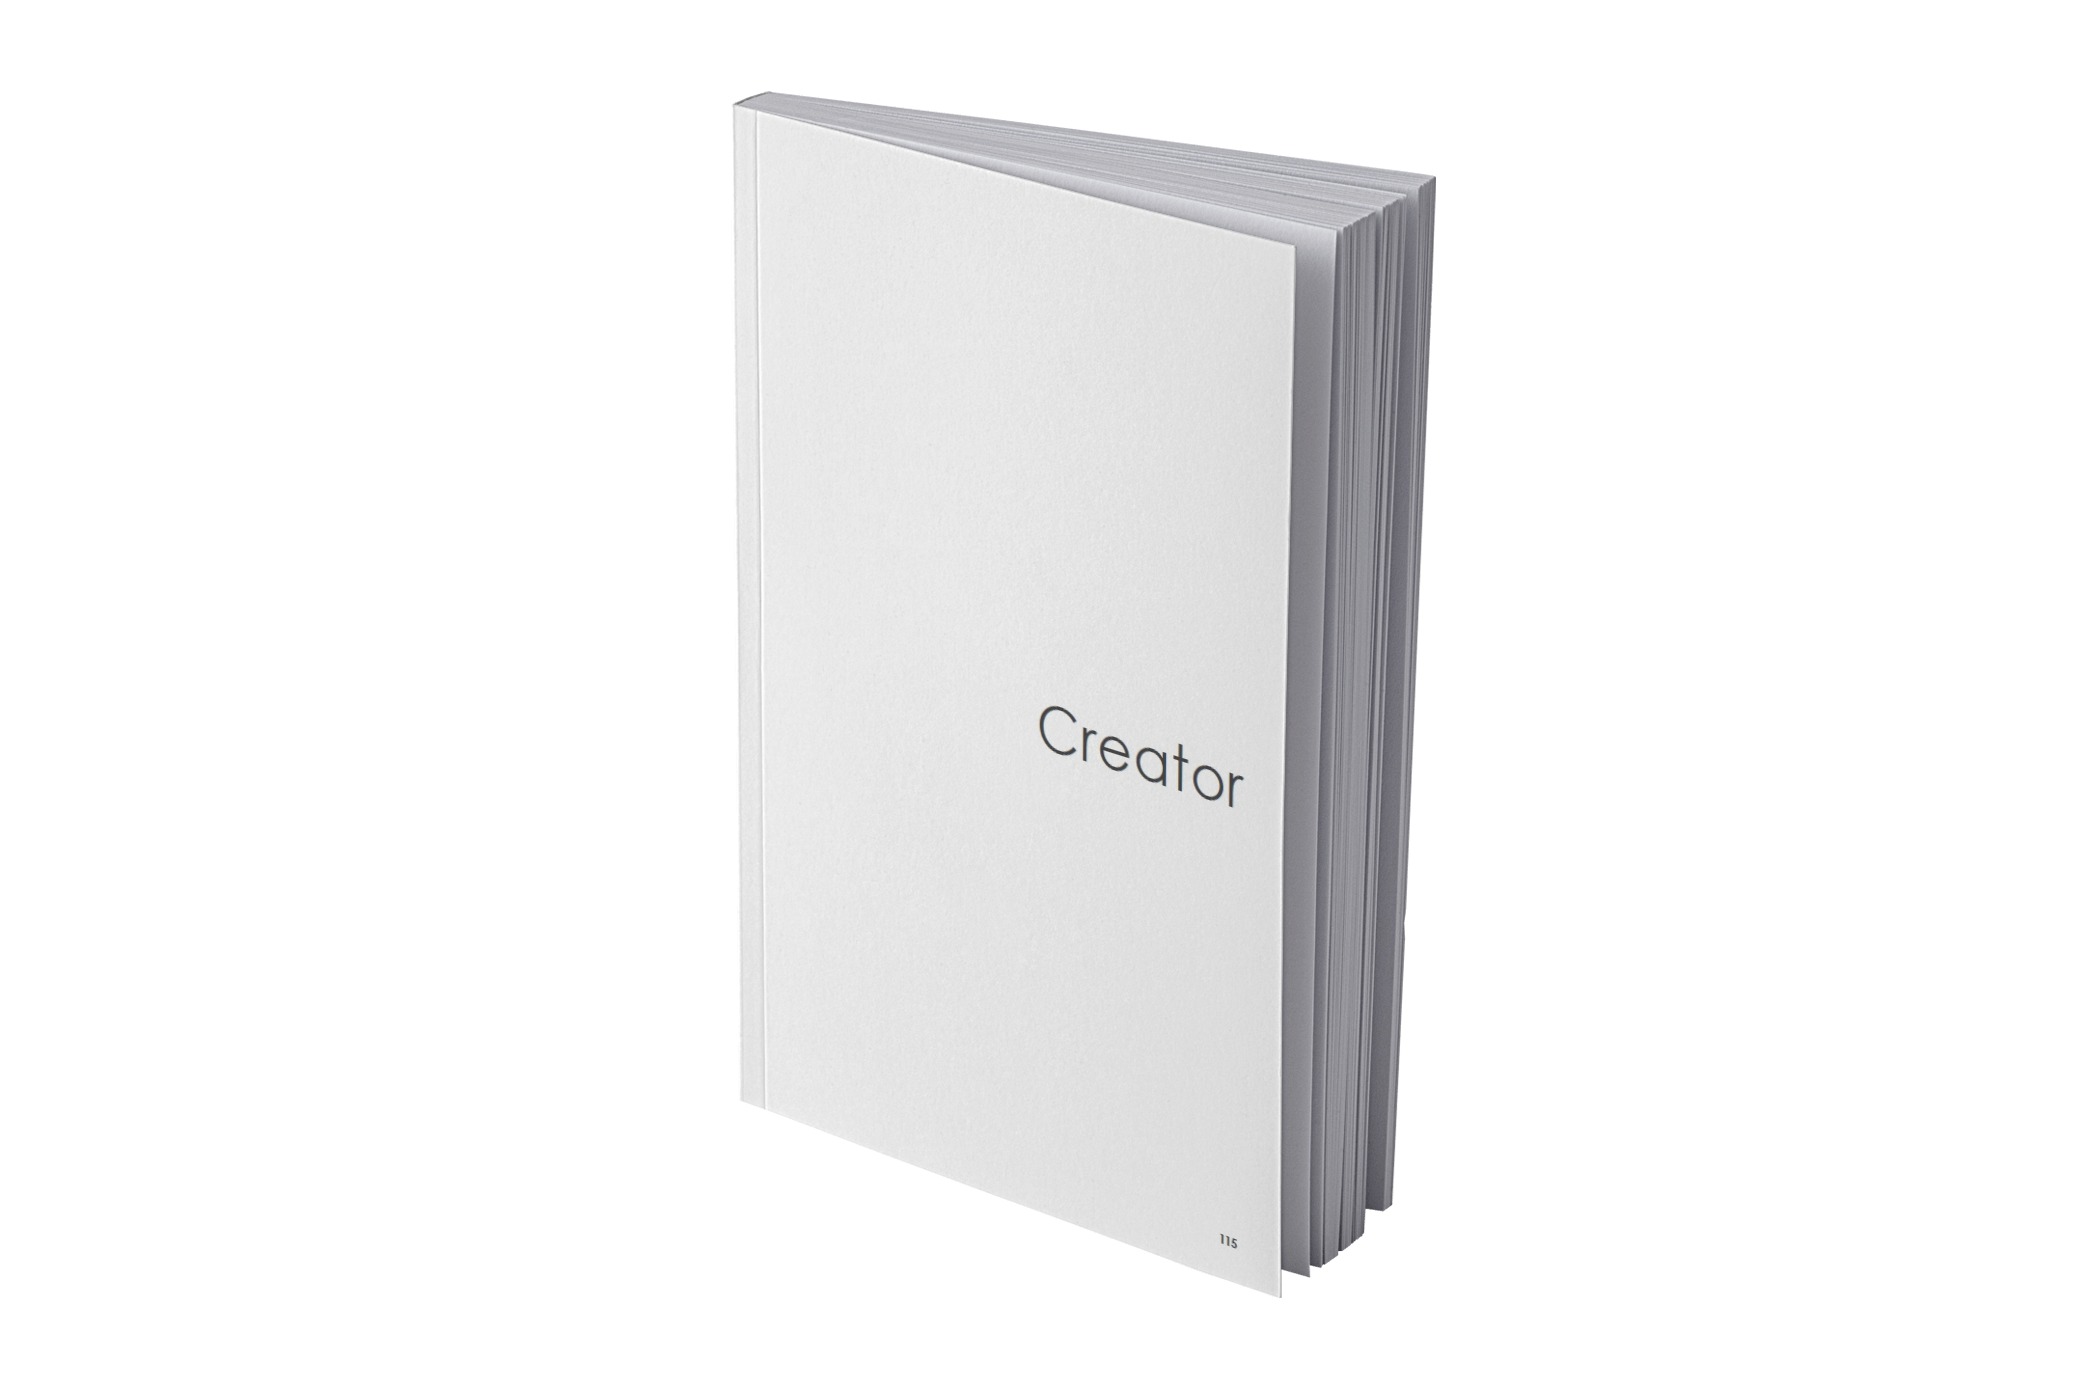 Ikona cennika - książka z napisem Creator będącym nazwą kolekcji.